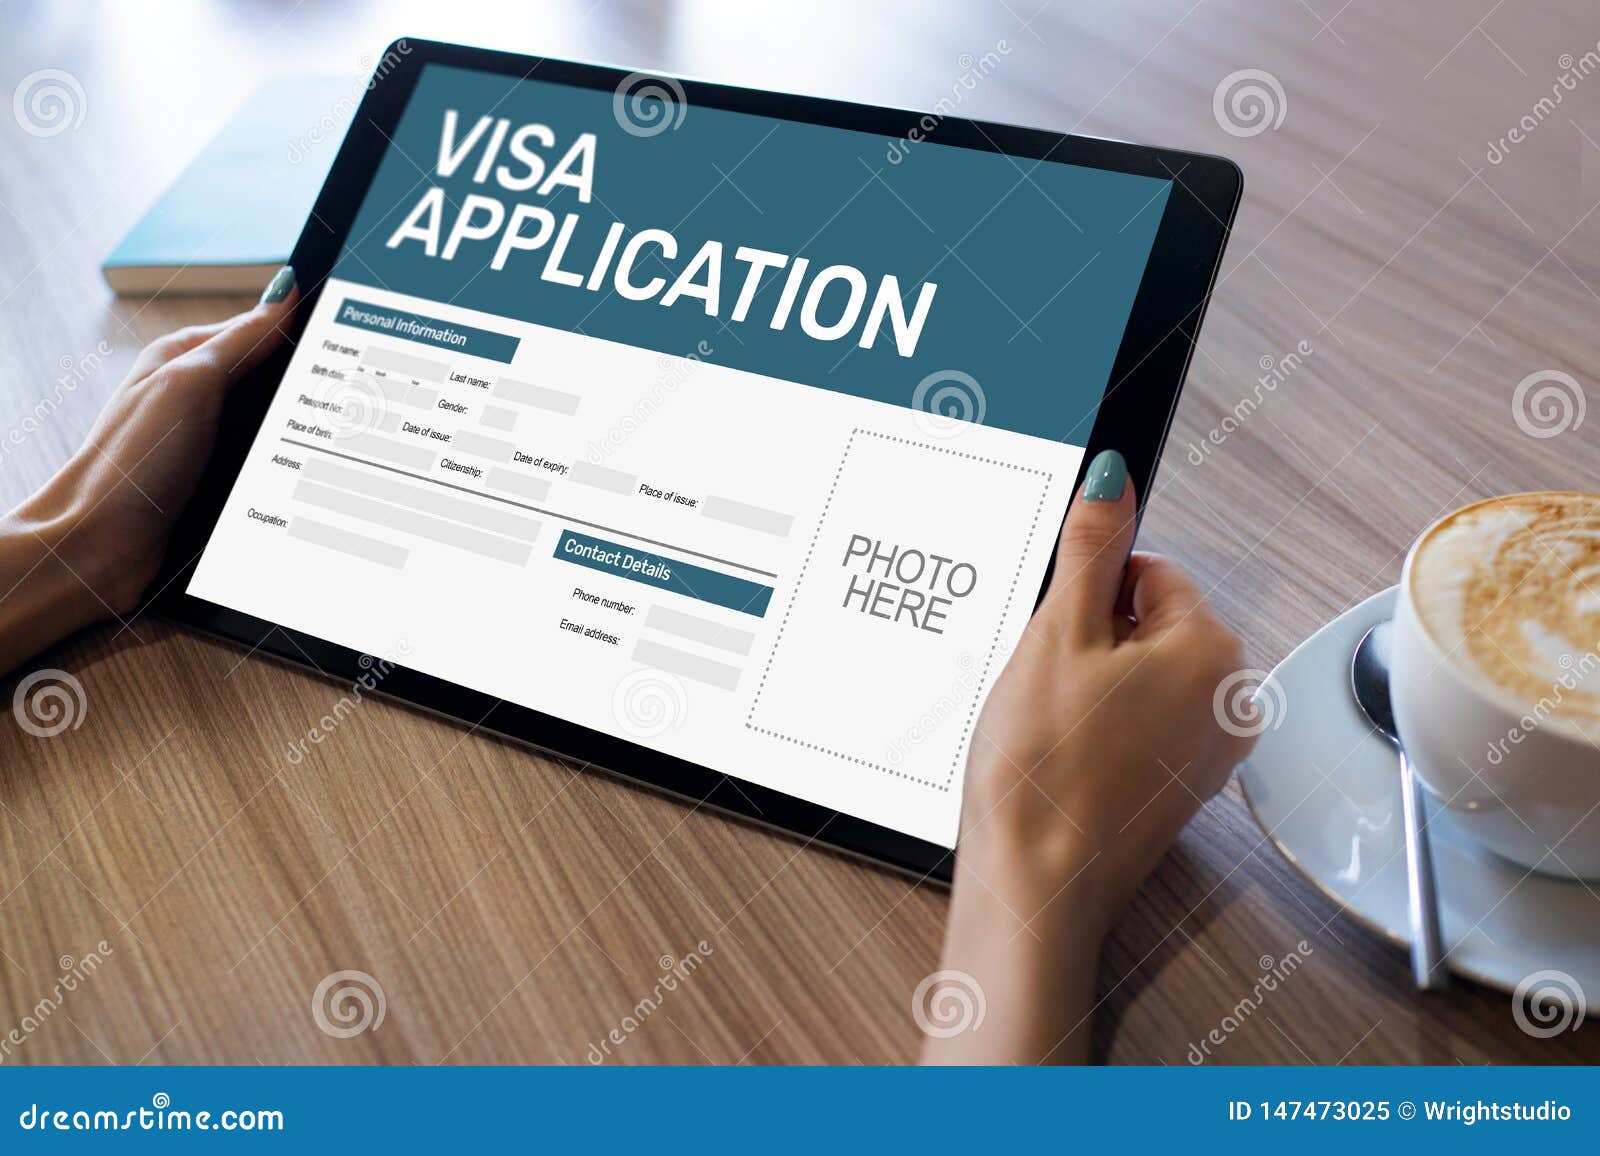 visit visa download online